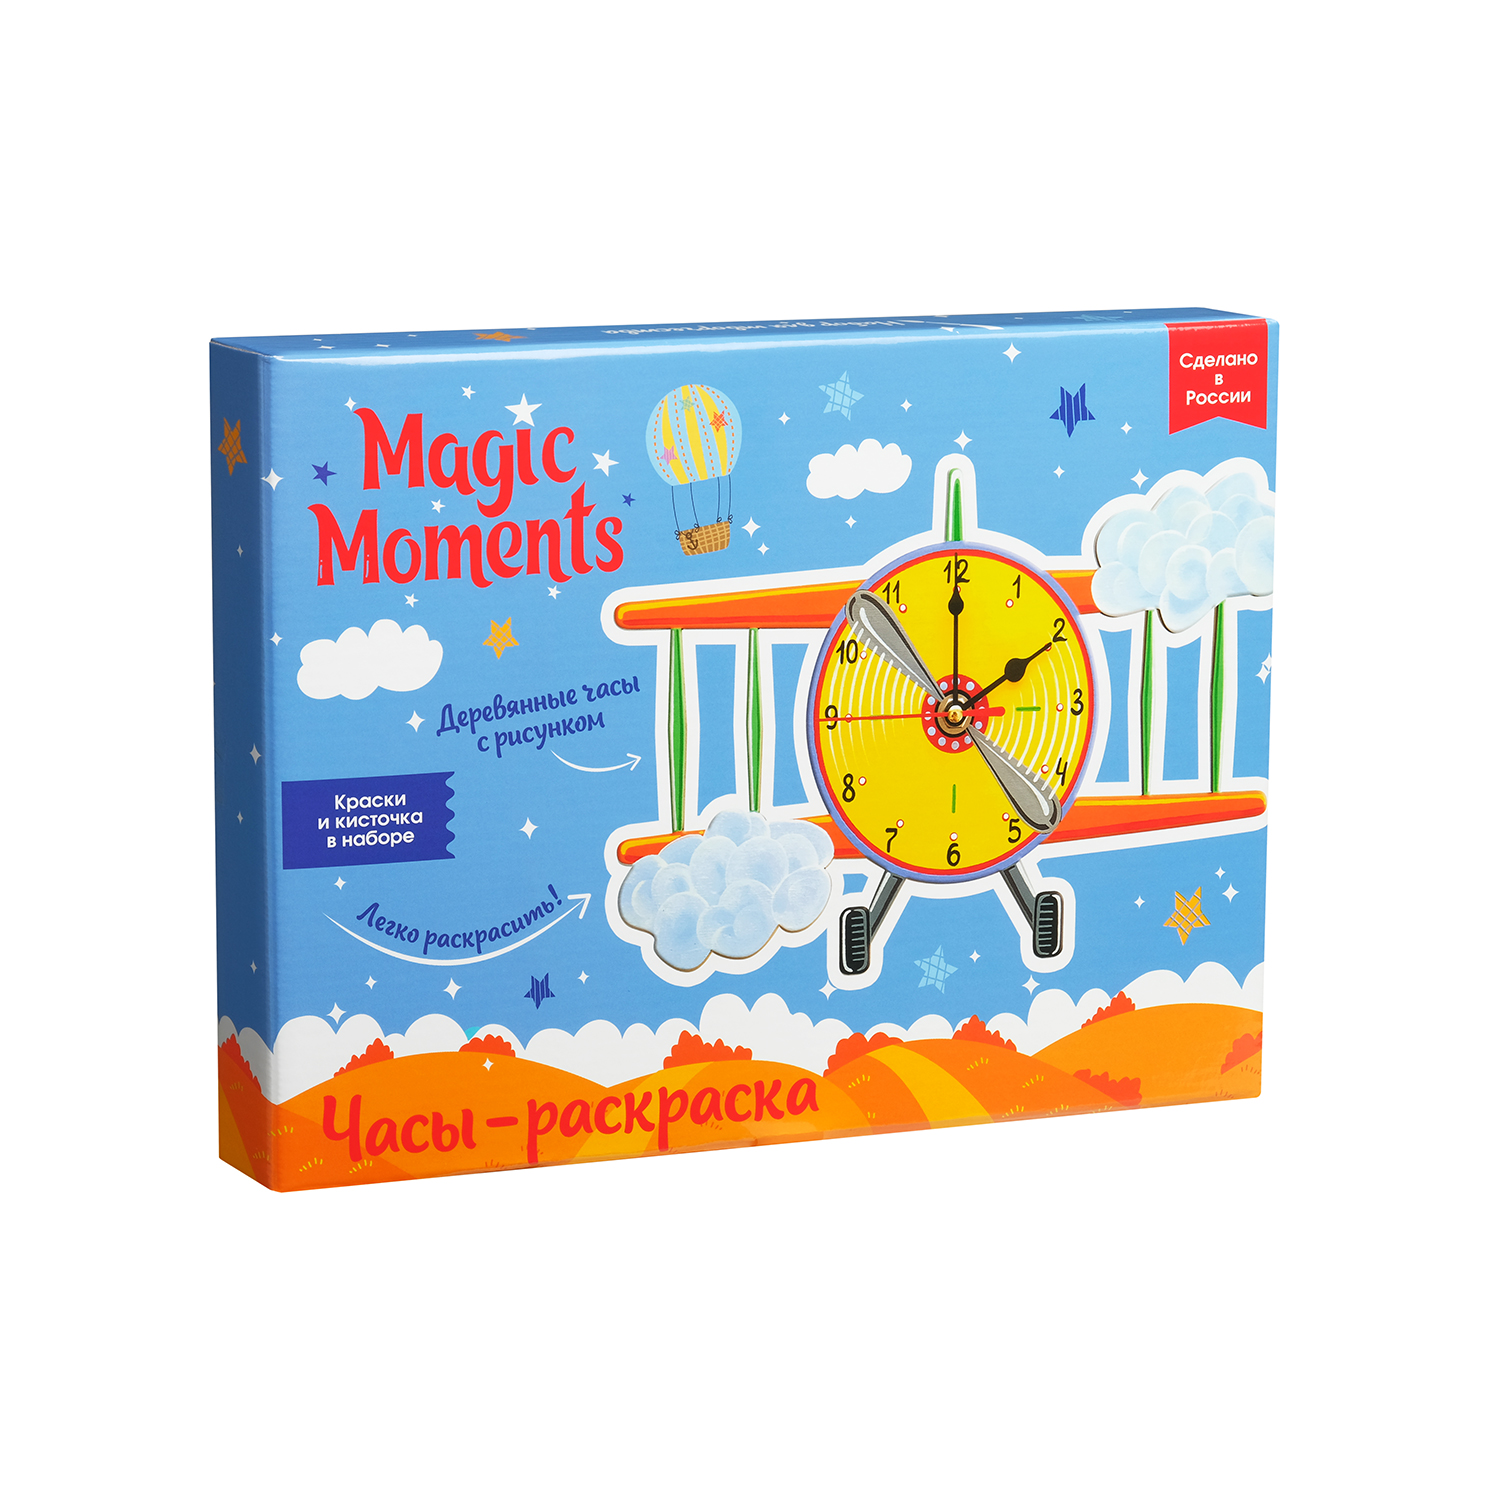 Часы-раскраска Авиатор Magic Moments magic moments часы настенные авиатор